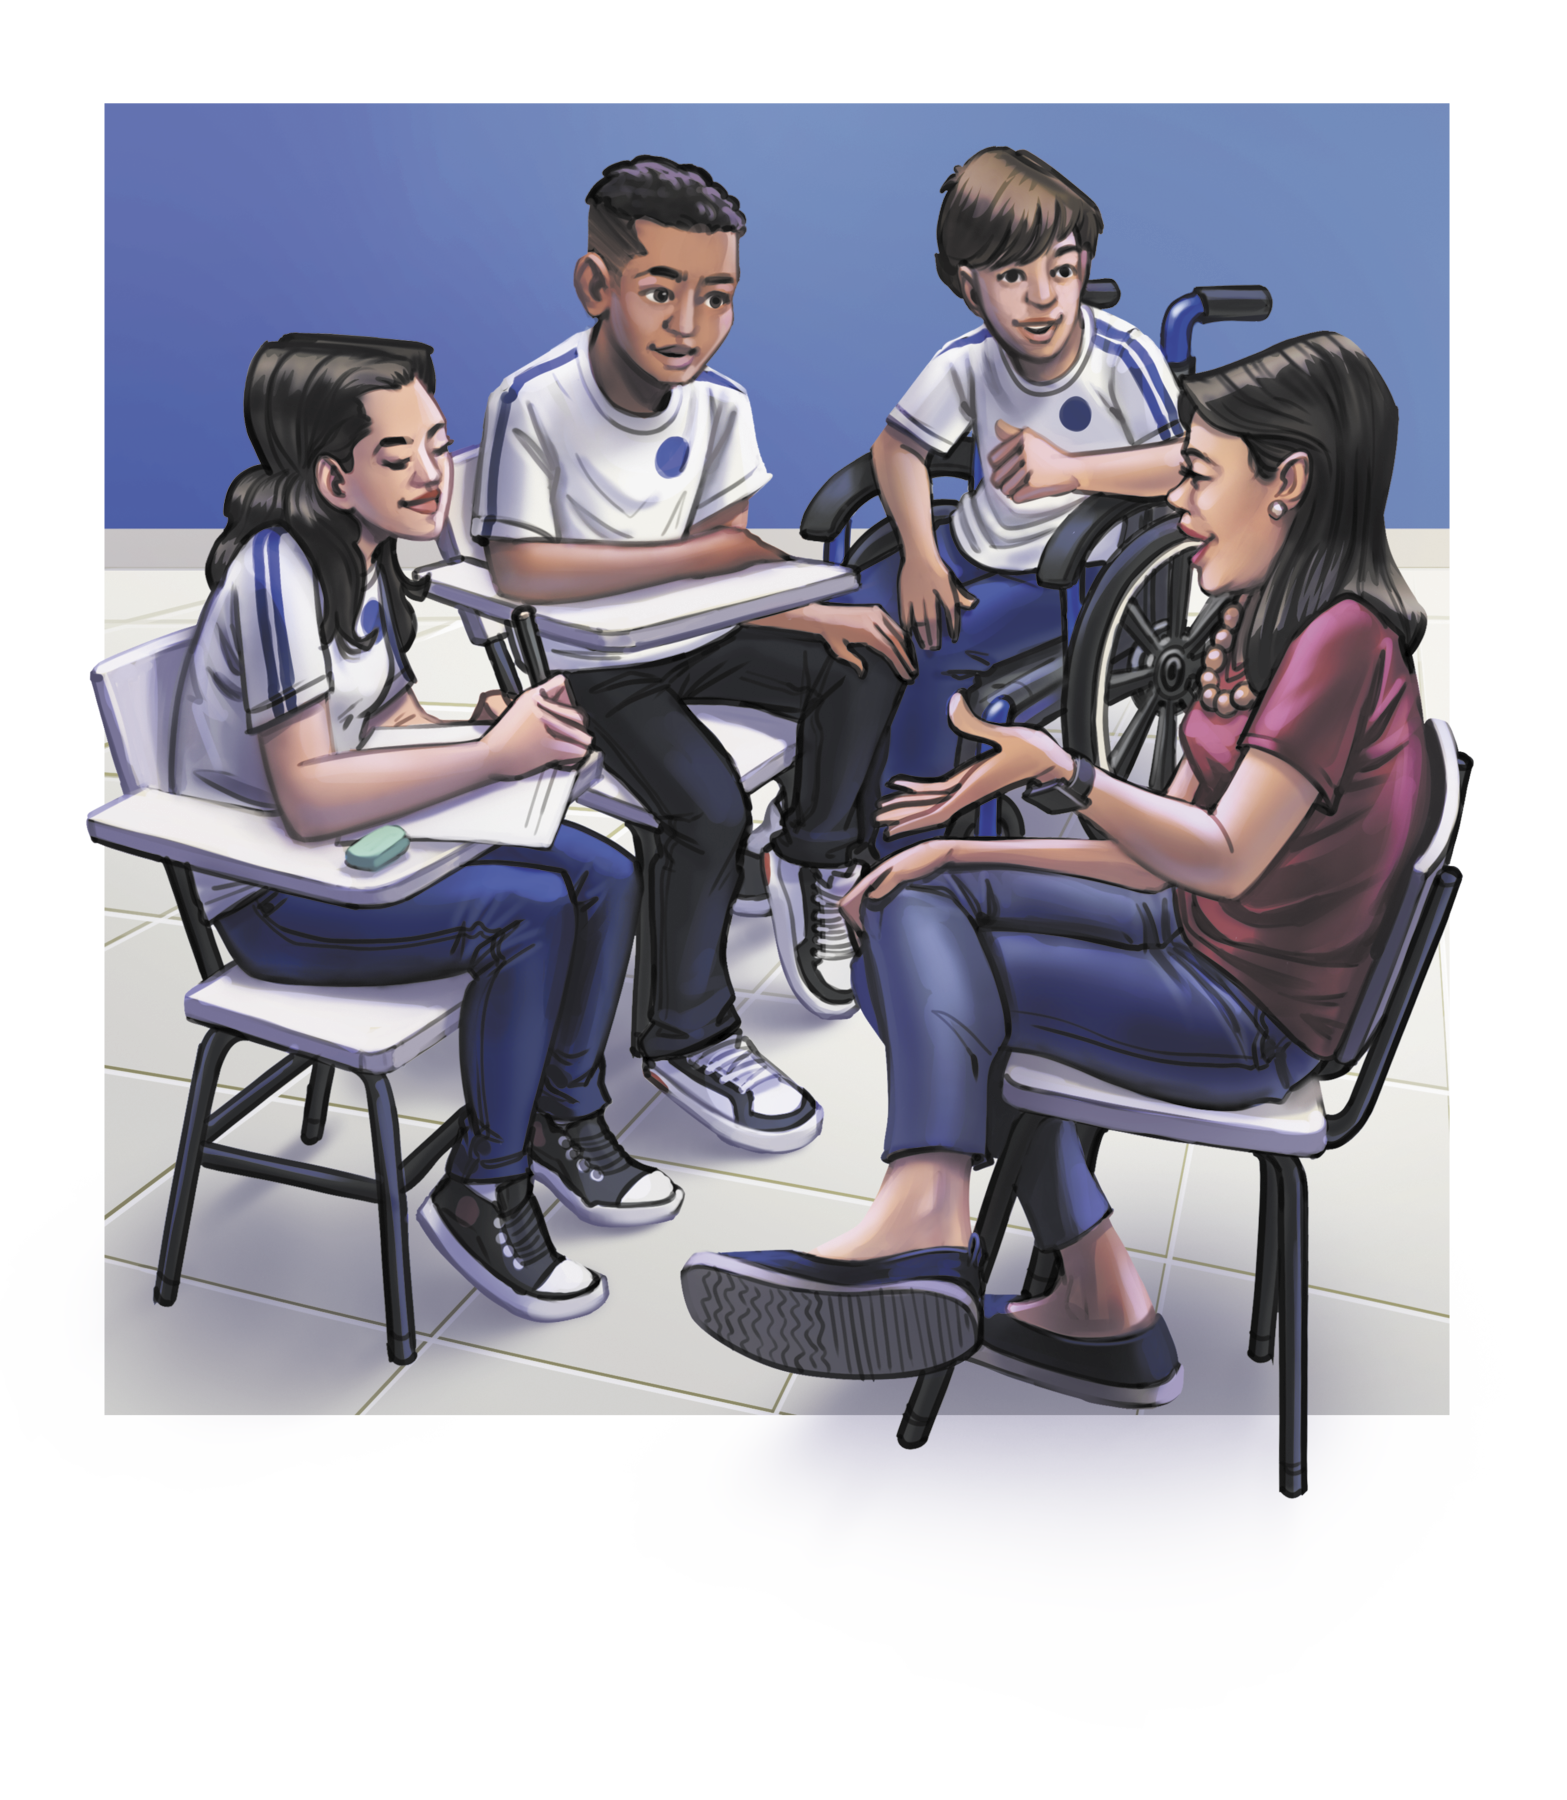 Ilustração. Um grupo de alunos vestindo uniformes de camisas brancas e calças azuis, sentados sobre carteiras escolares. Um deles utiliza uma cadeira de rodas. Estão dispostos em círculo, voltados para uma mulher de cabelos escuros, longos e lisos, vestindo uma camisa roxa e uma calça azul, sentada sobre uma cadeira.